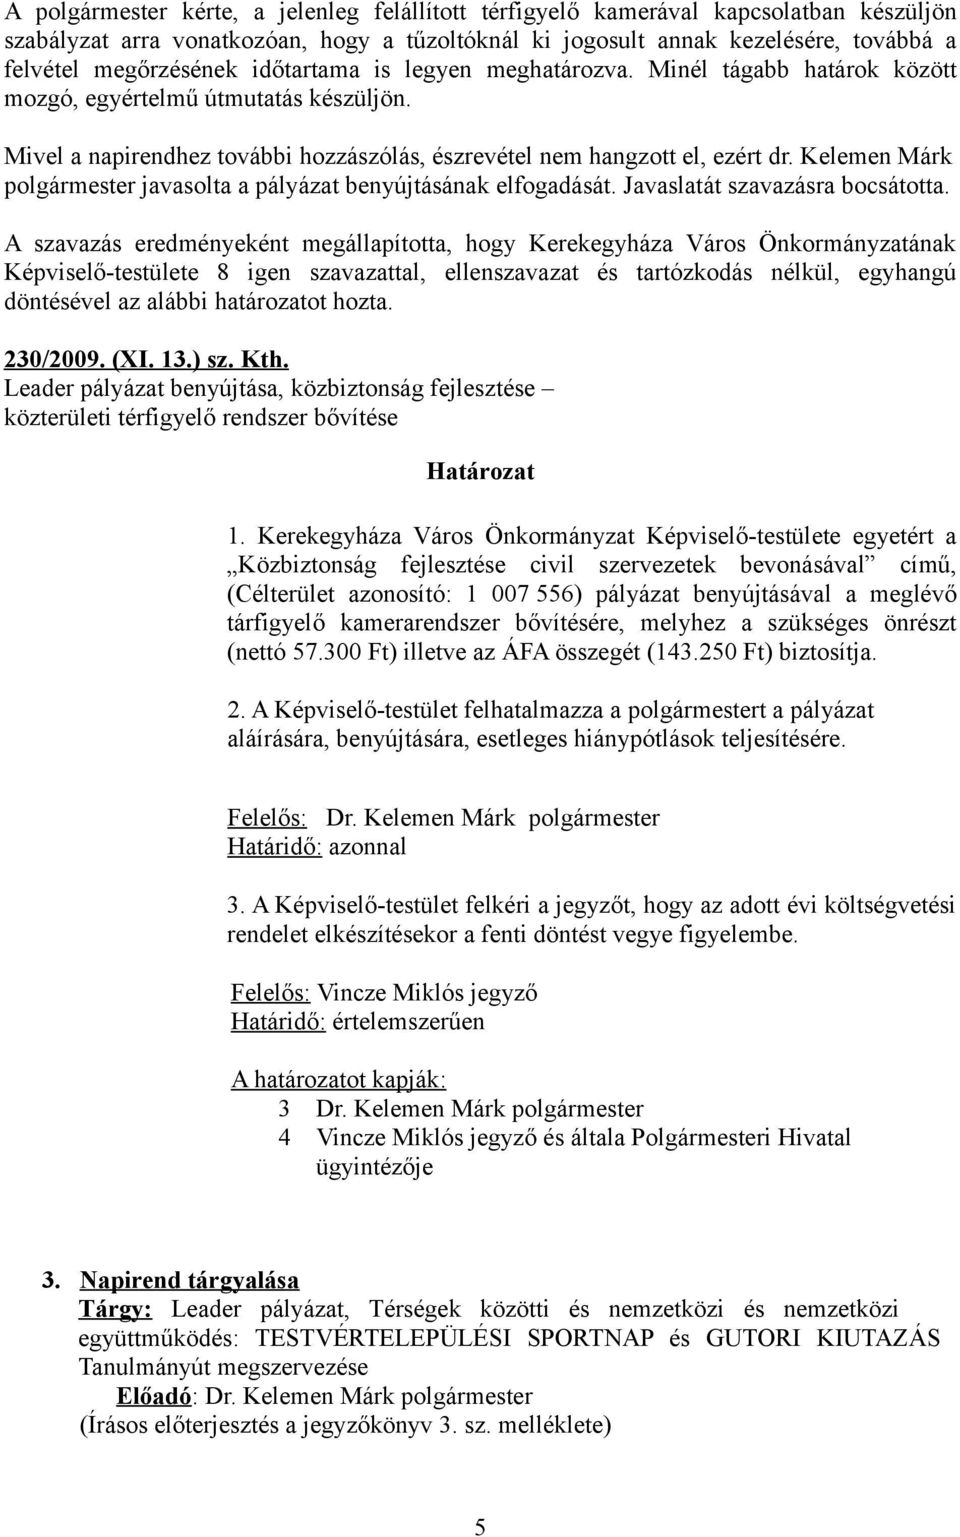 Kelemen Márk polgármester javasolta a pályázat benyújtásának elfogadását. Javaslatát szavazásra bocsátotta. 230/2009. (XI. 13.) sz. Kth.